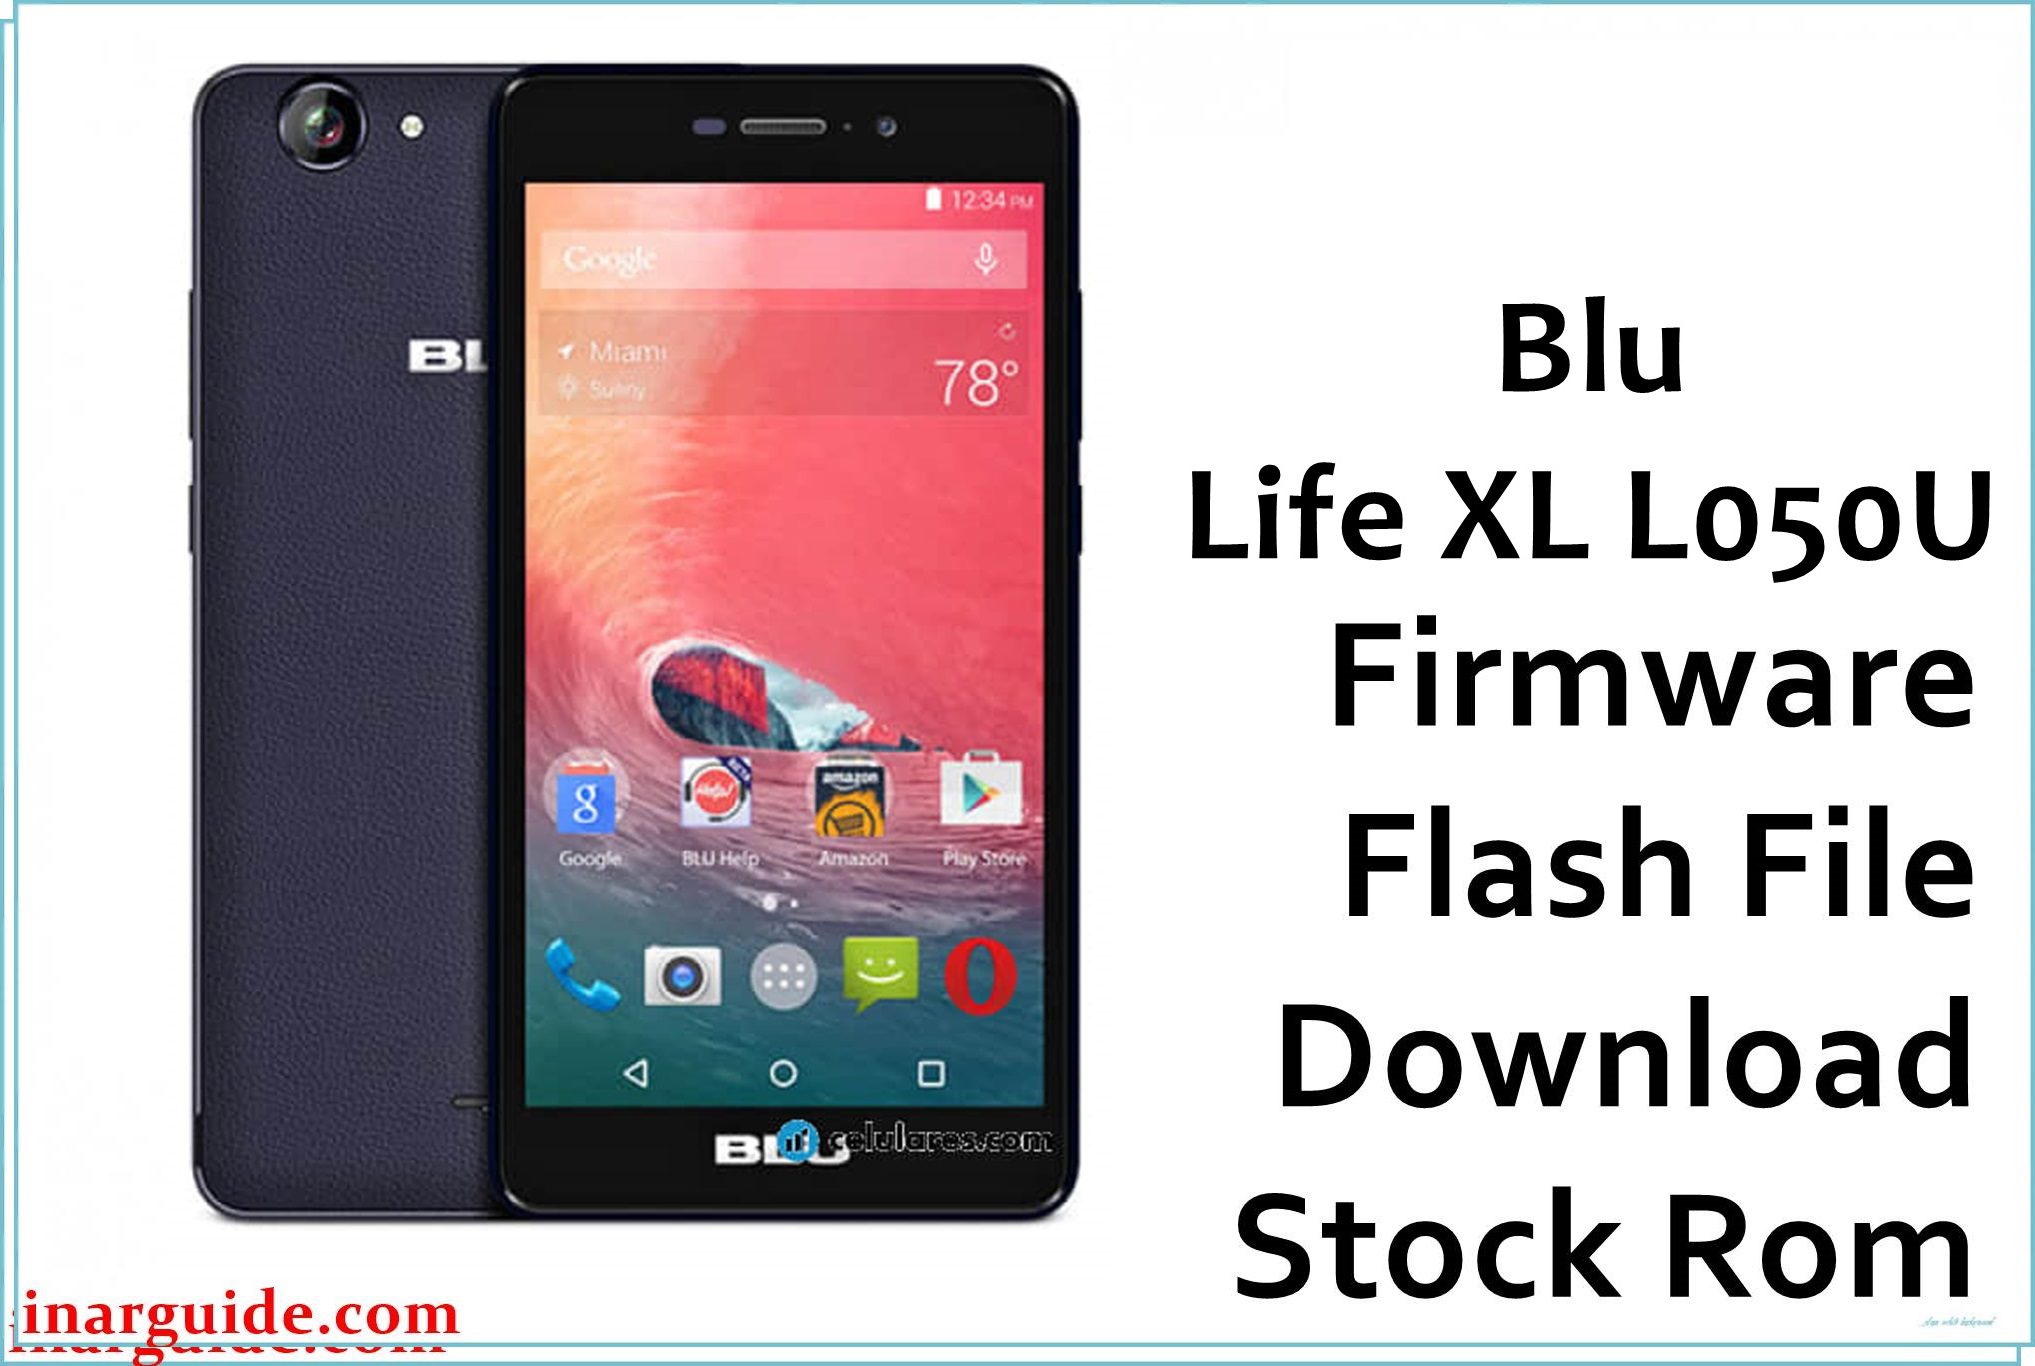 Blu Life XL L050U